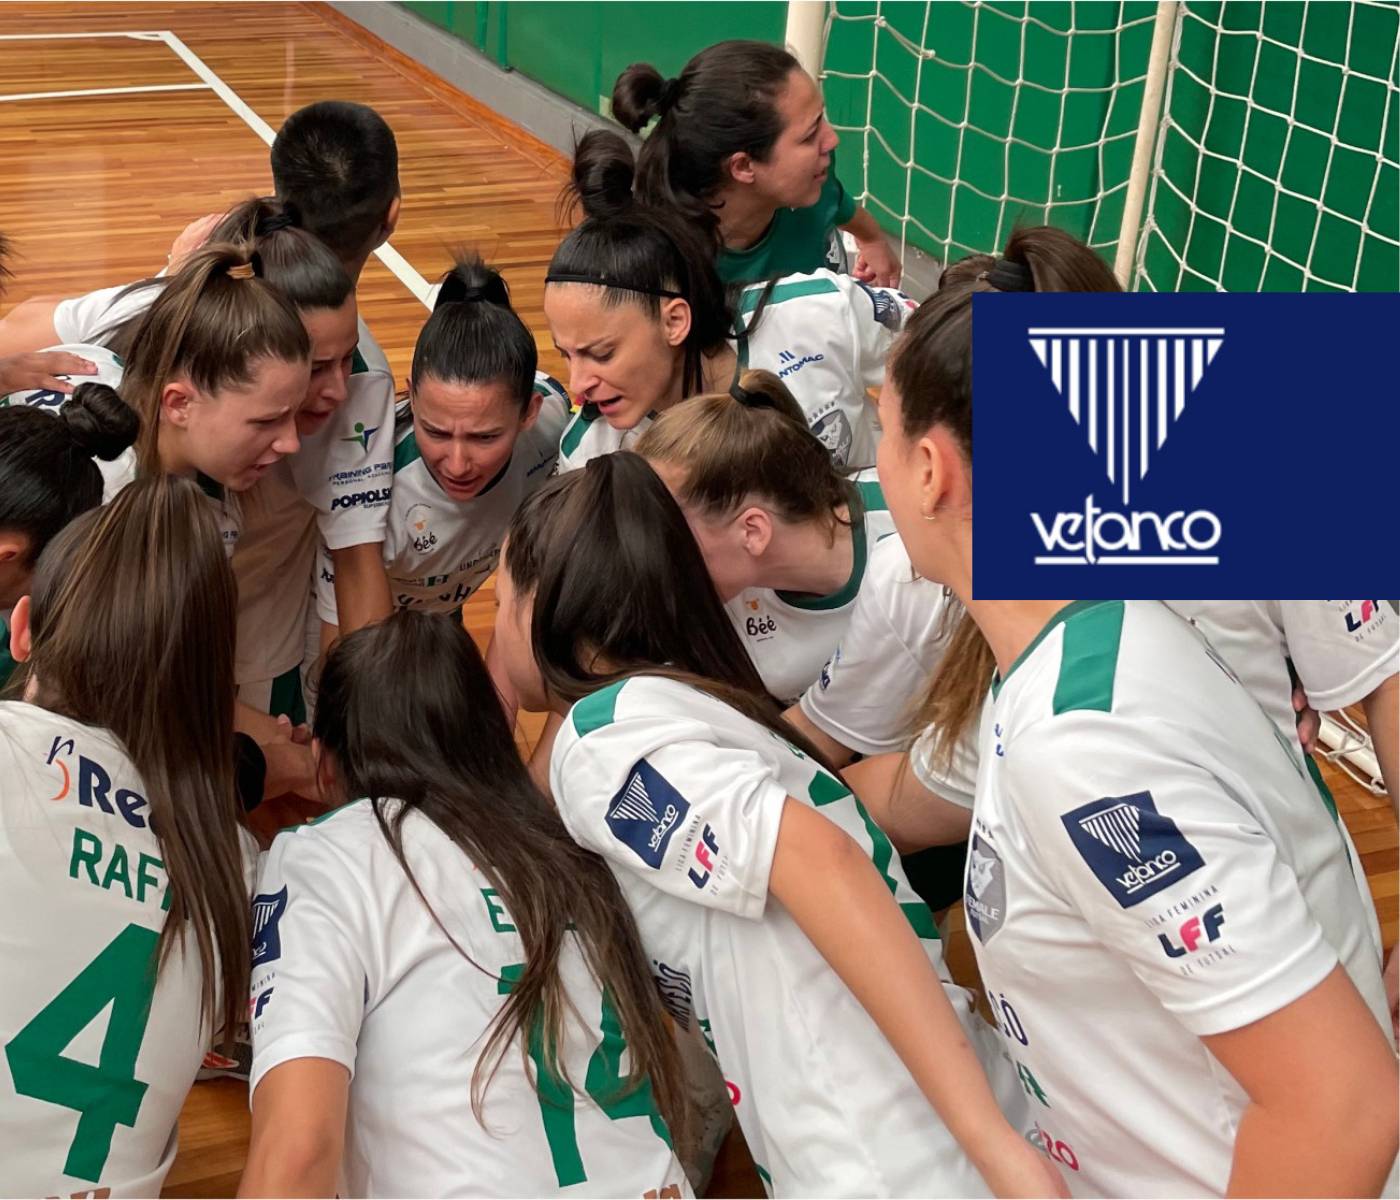 Female, com apoio da Vetanco, representa Chapecó no Futsal Feminino da maior competição do estado